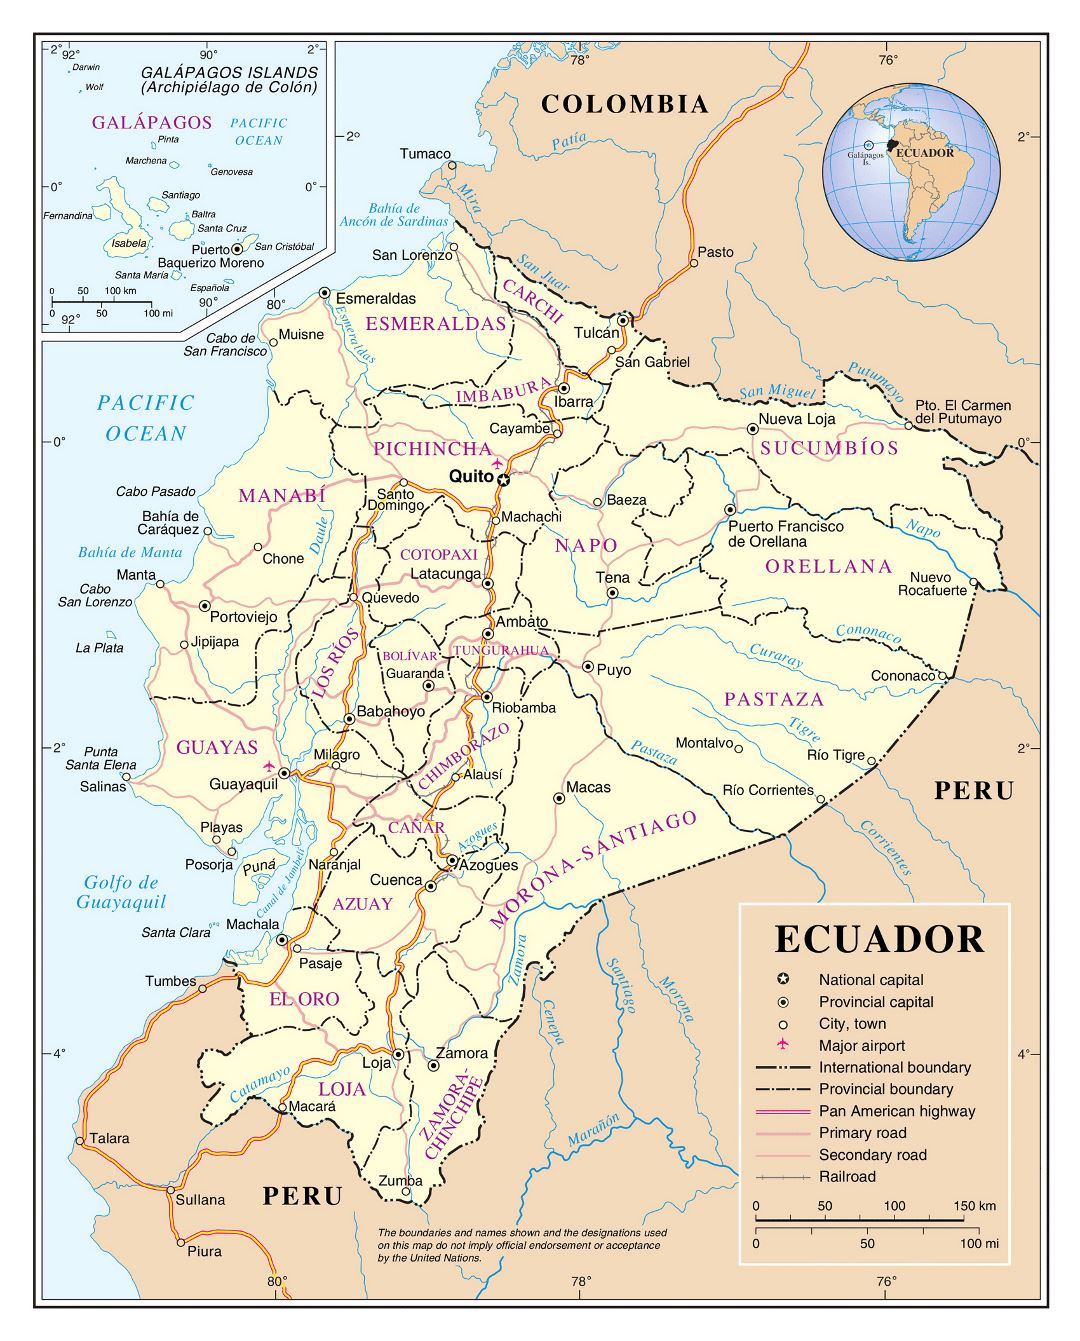 Большая подробная политическая и административная карта Эквадора с основными дорогами, крупными городами и аэропортами